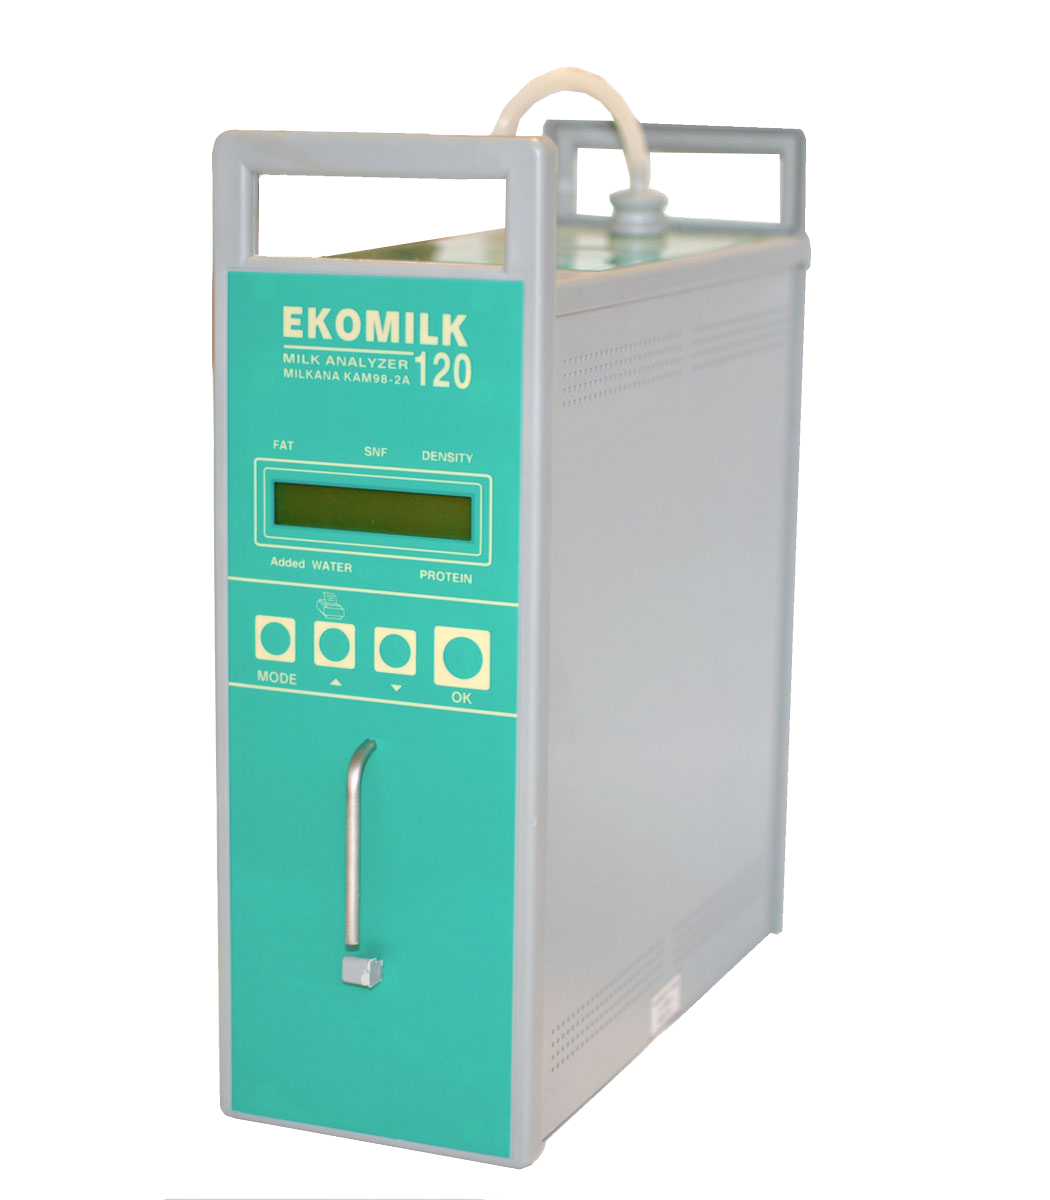 Milk quality analyzer Ekomilk Total 120 with thermal printer